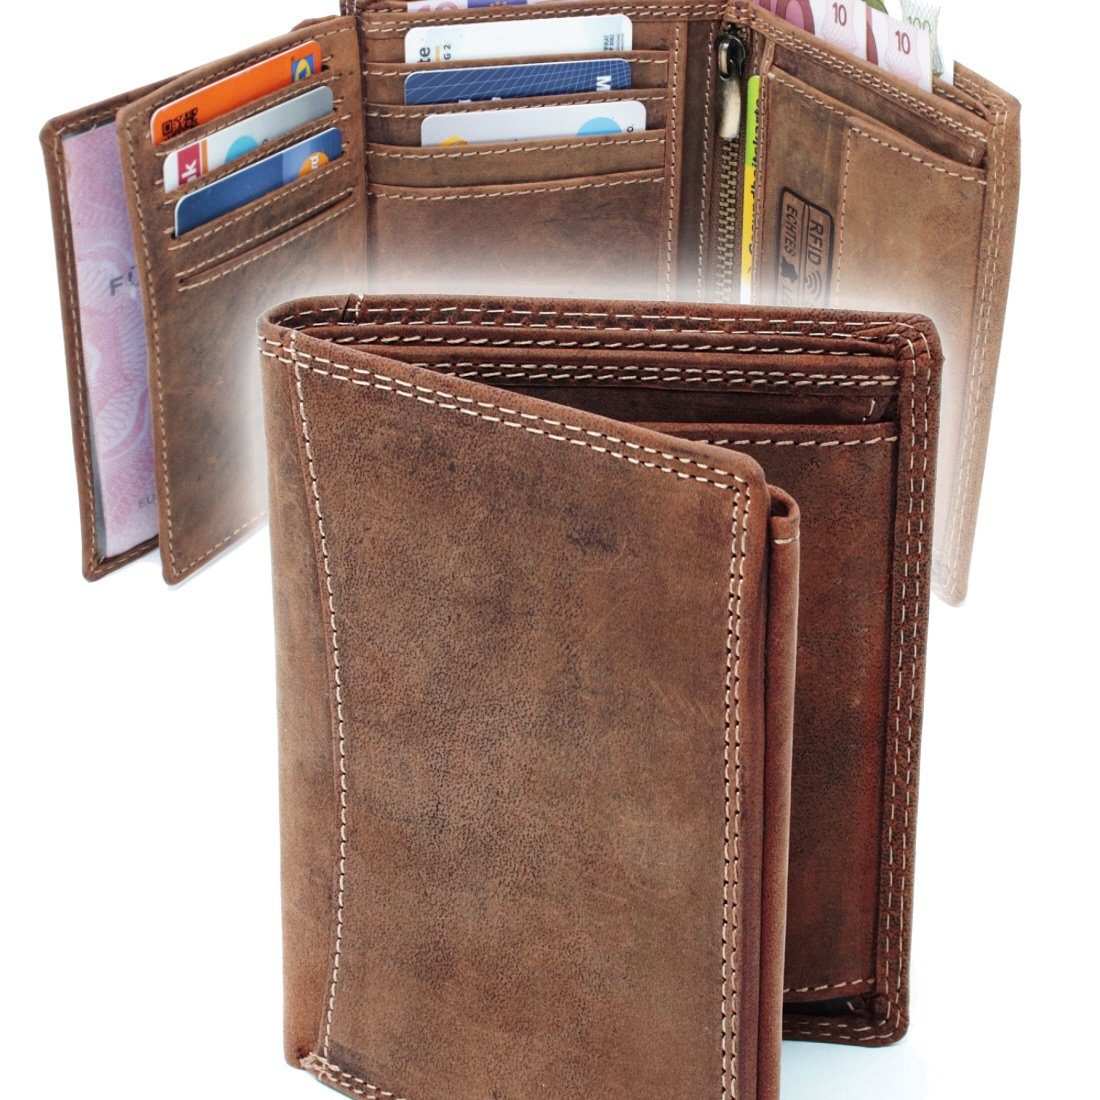 SHG Brieftasche Geldbörse Börse, Geldbörse Männerbörse Schutz Münzfach Herren Geldbeutel RFID Portemonnaie Leder mit Lederbörse